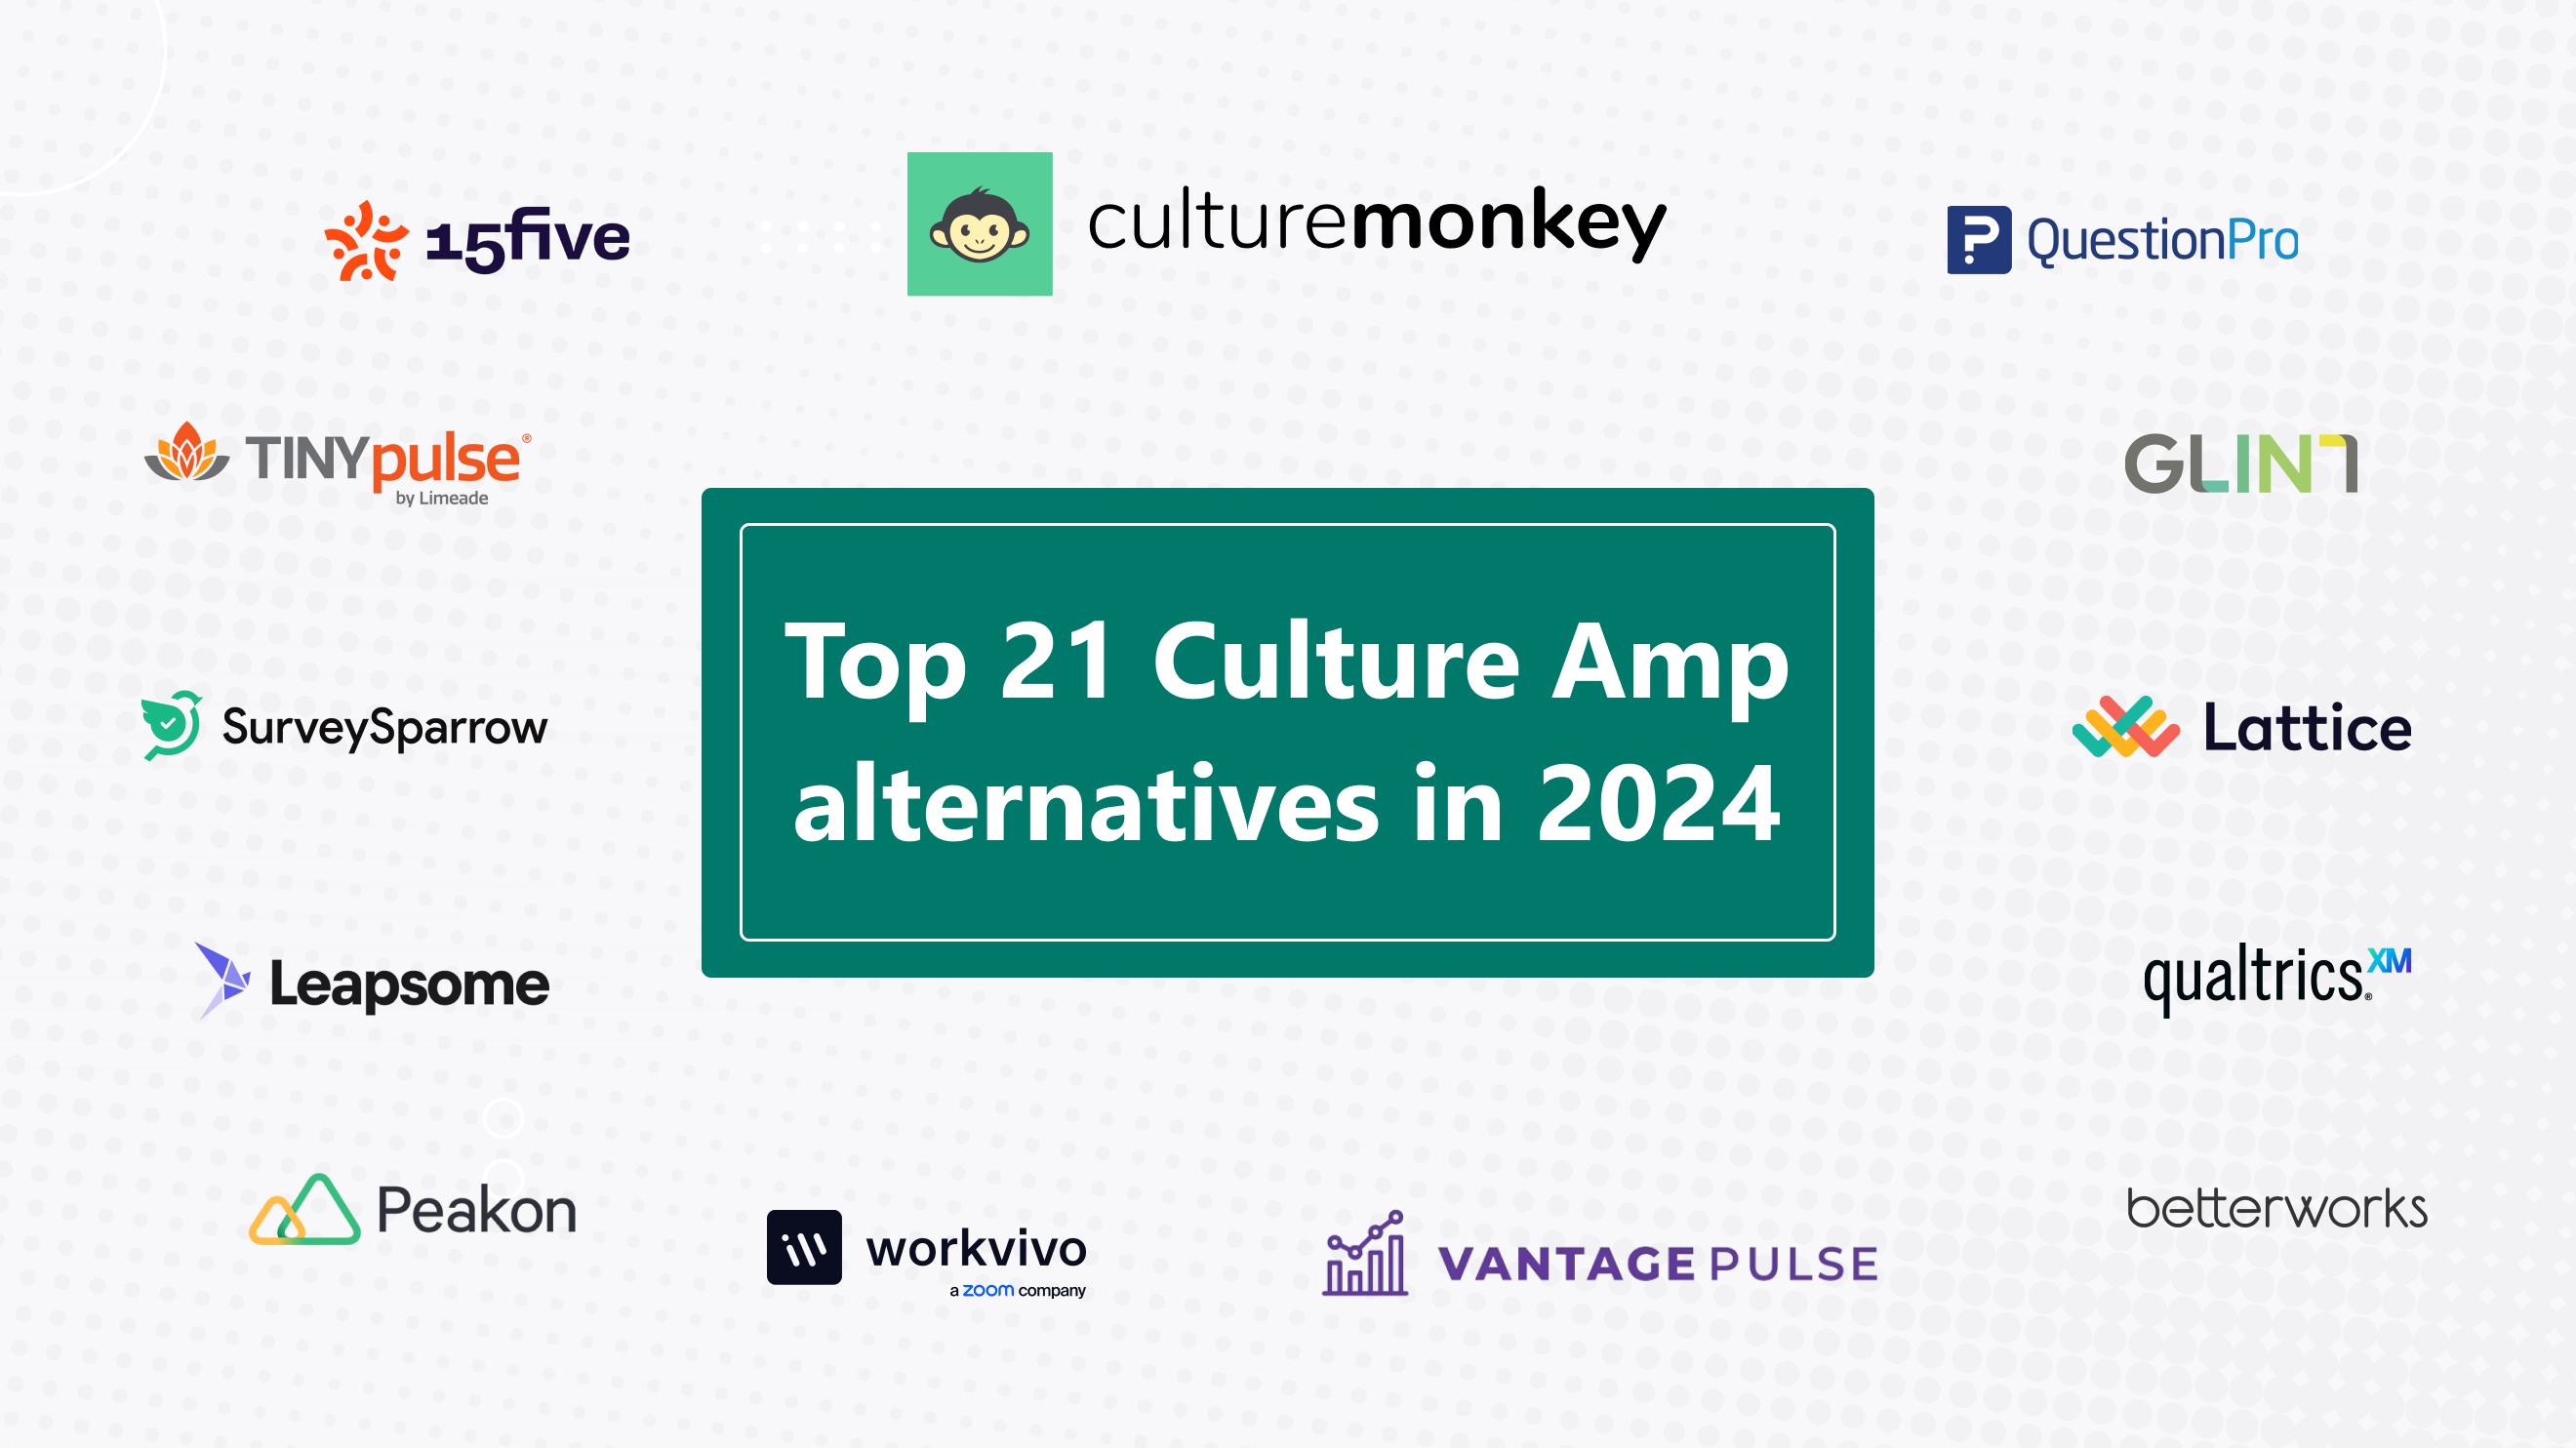 Top 21 Culture Amp alternatives in 2024